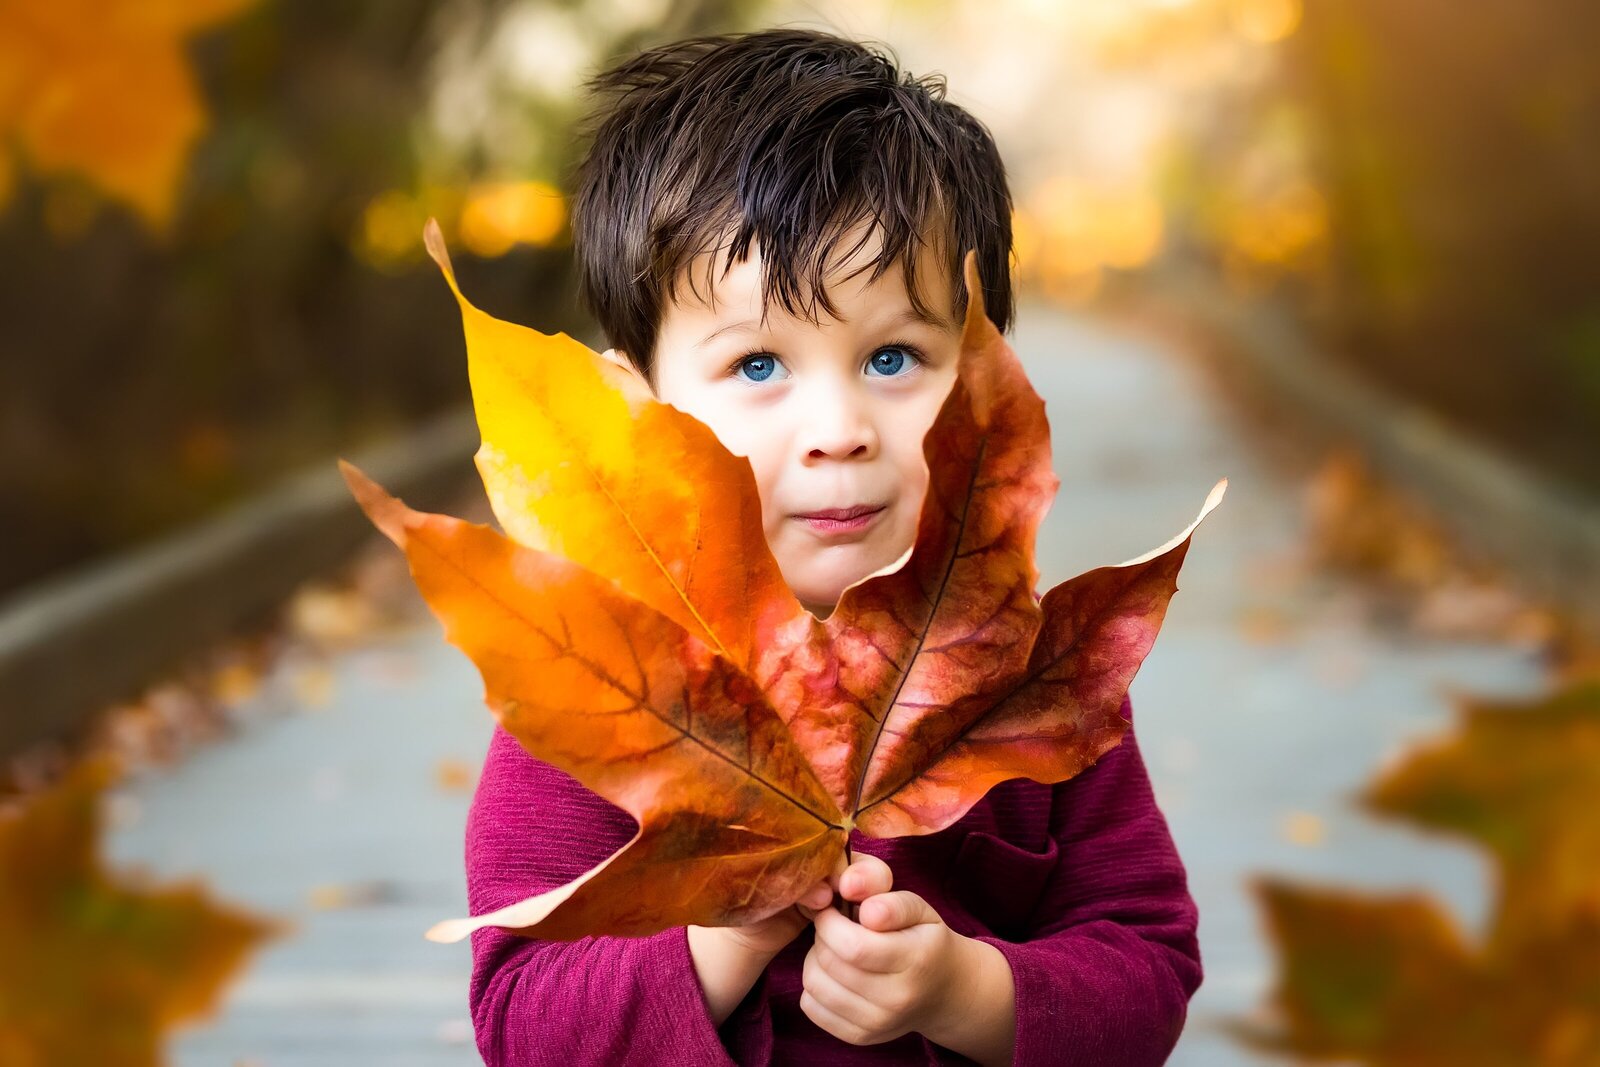 Boy posing with an autumn leaf in San Diego